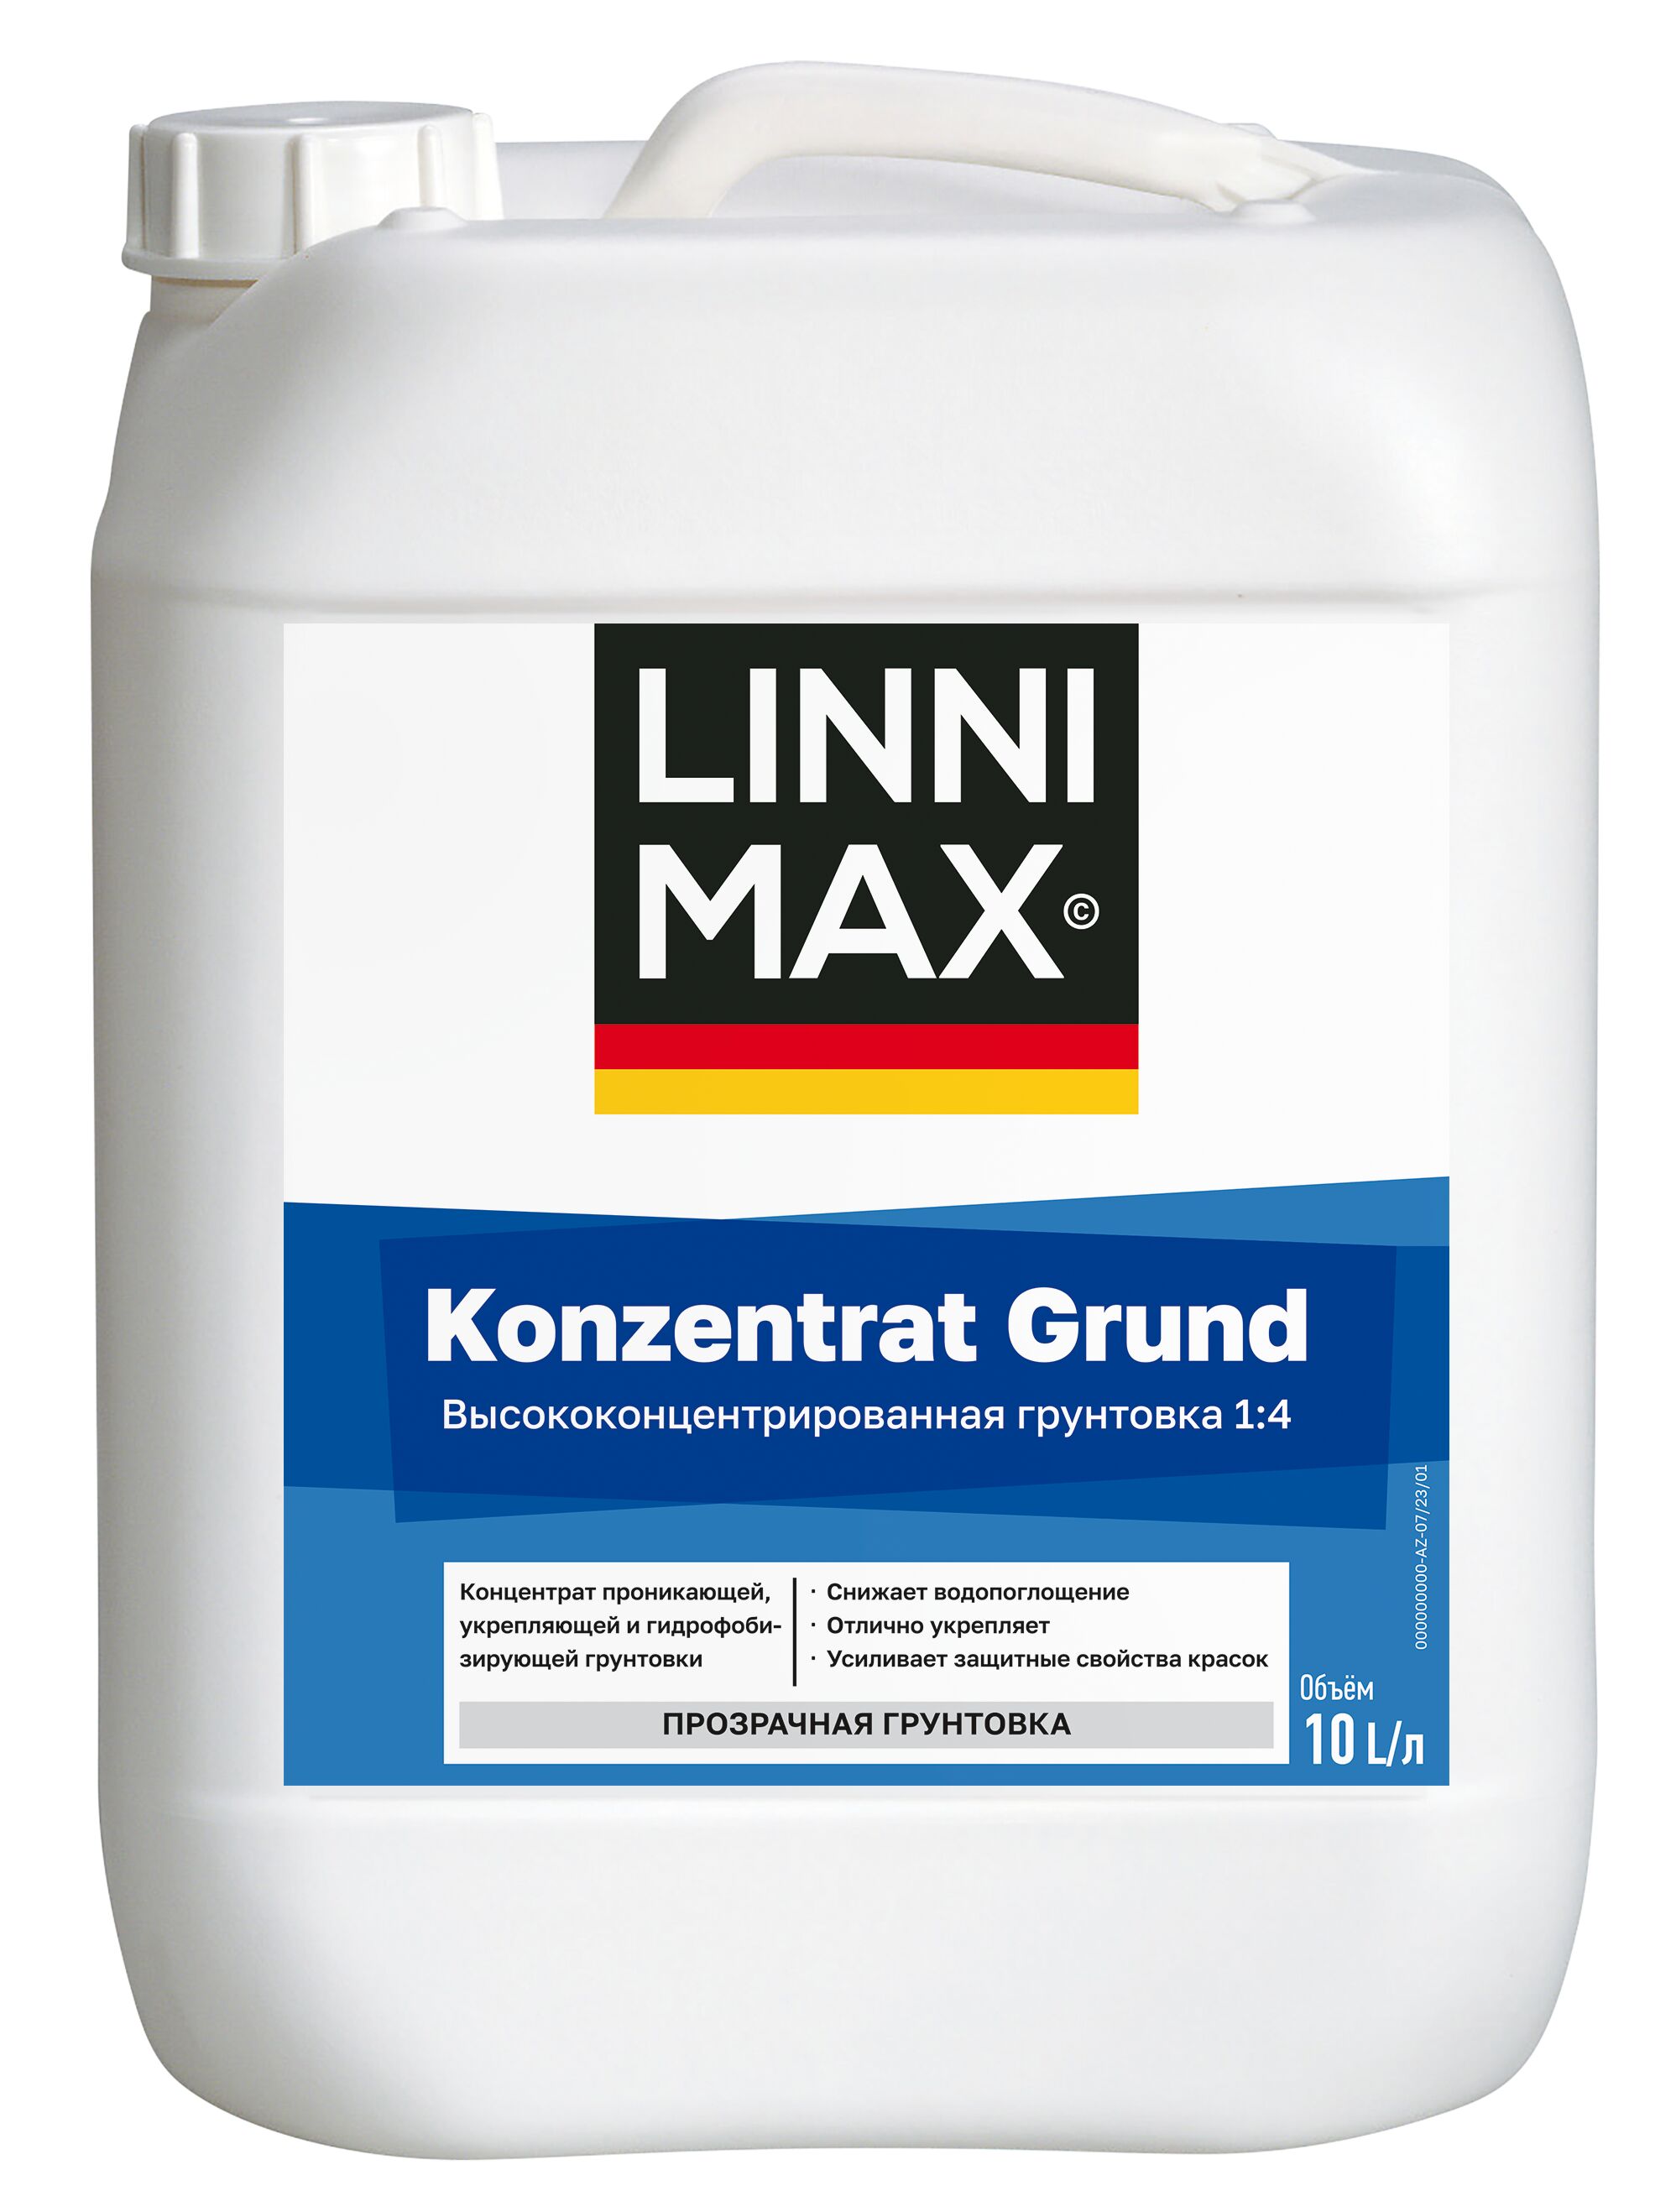 Konzentrat Grund (1:4) 10л Грунтовка-концентрат водно-дисперсионная LINNIMAX, LX Konzentrat Grund (1:4) 10 л